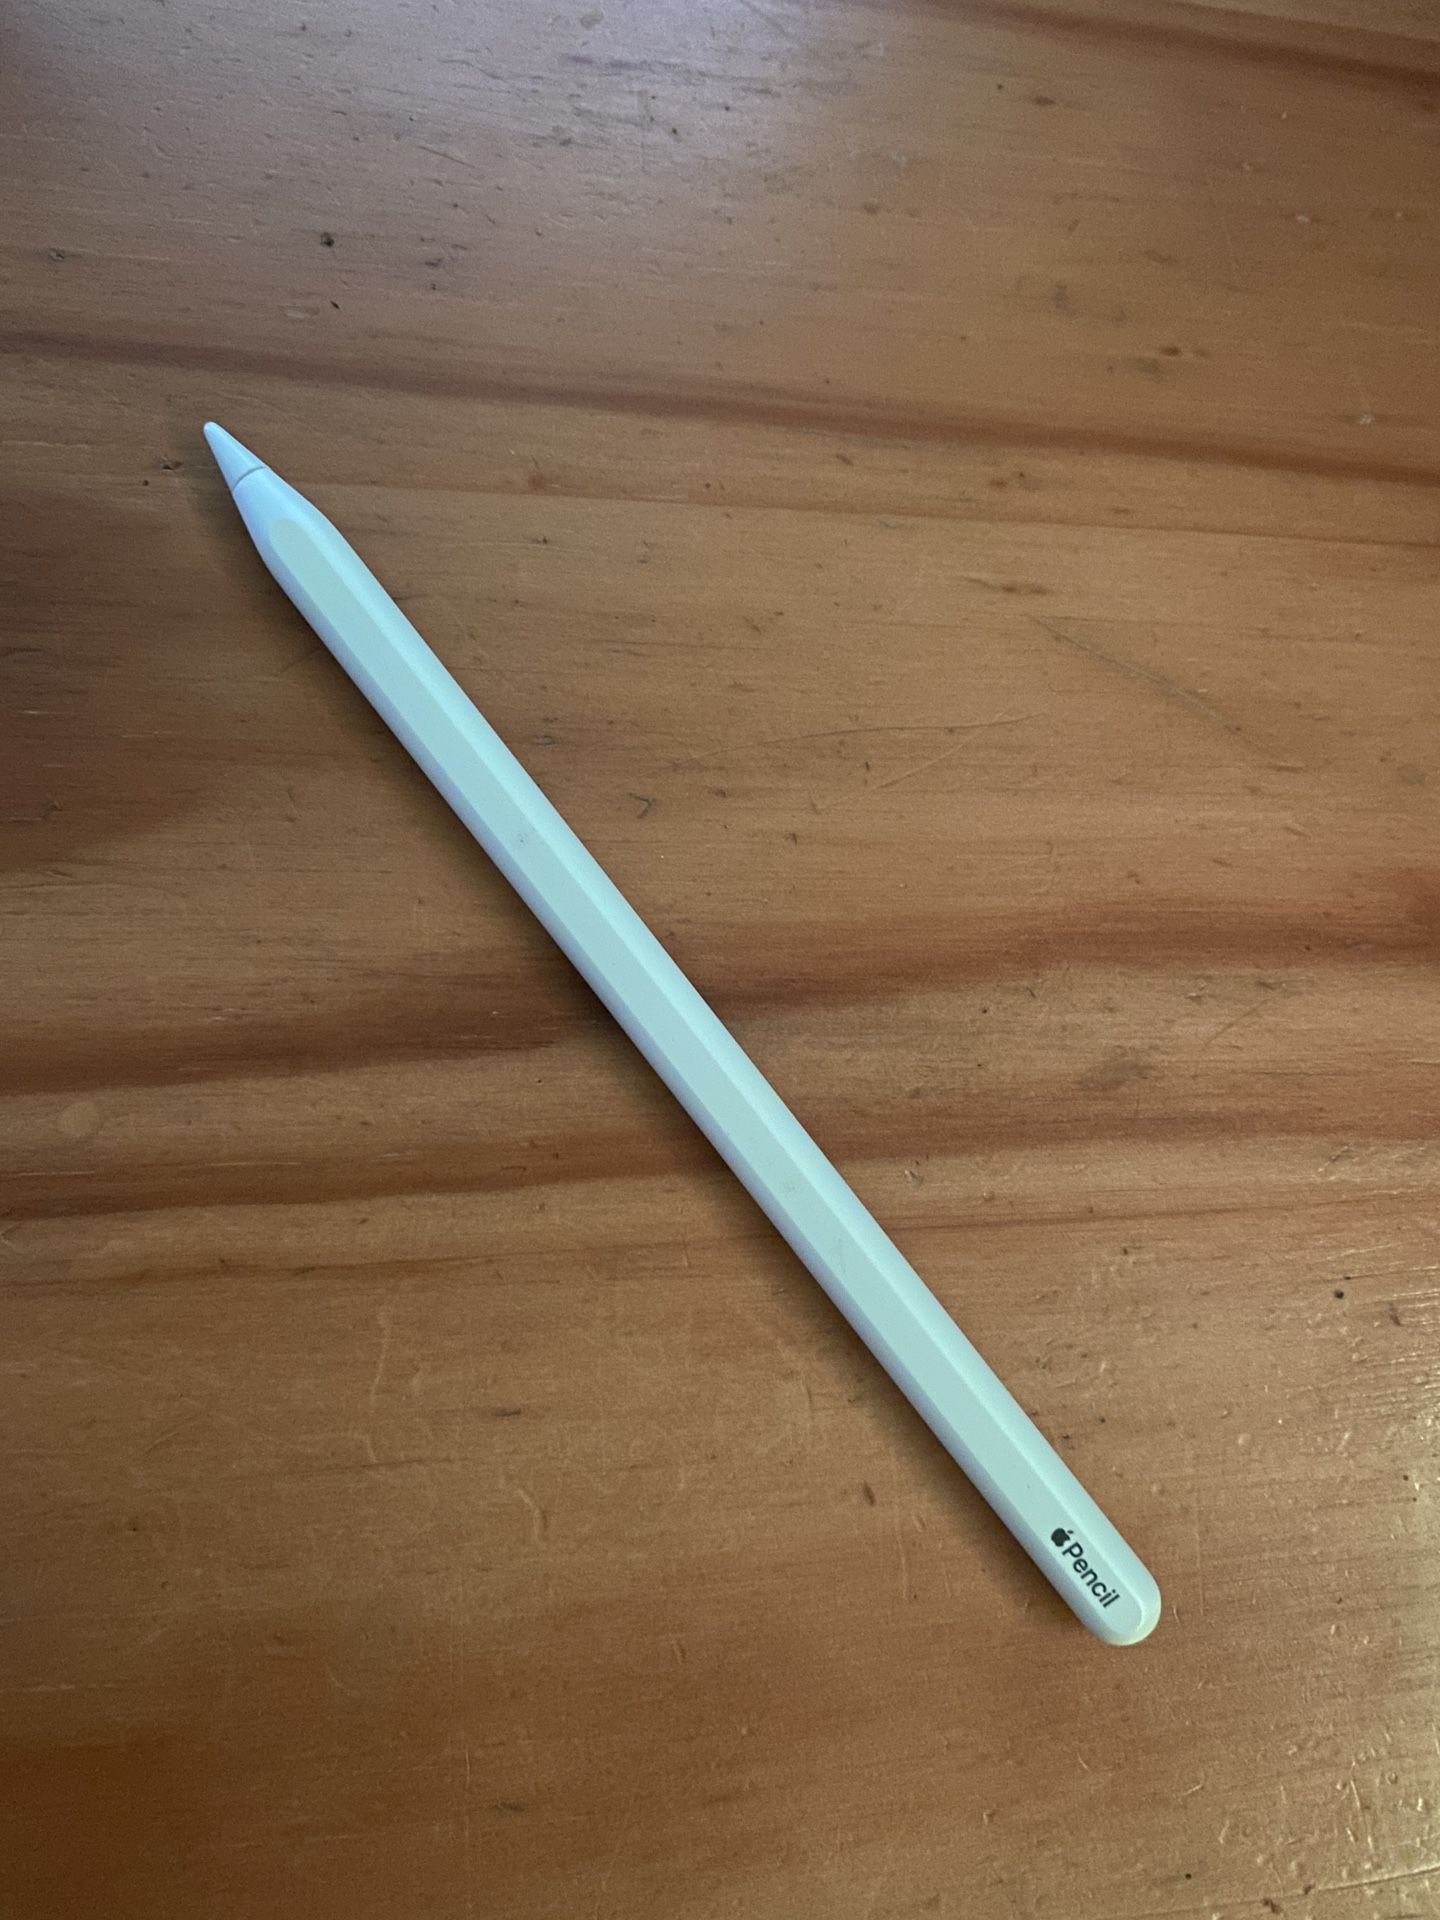 Apple Pencil Gen 2 - Like New